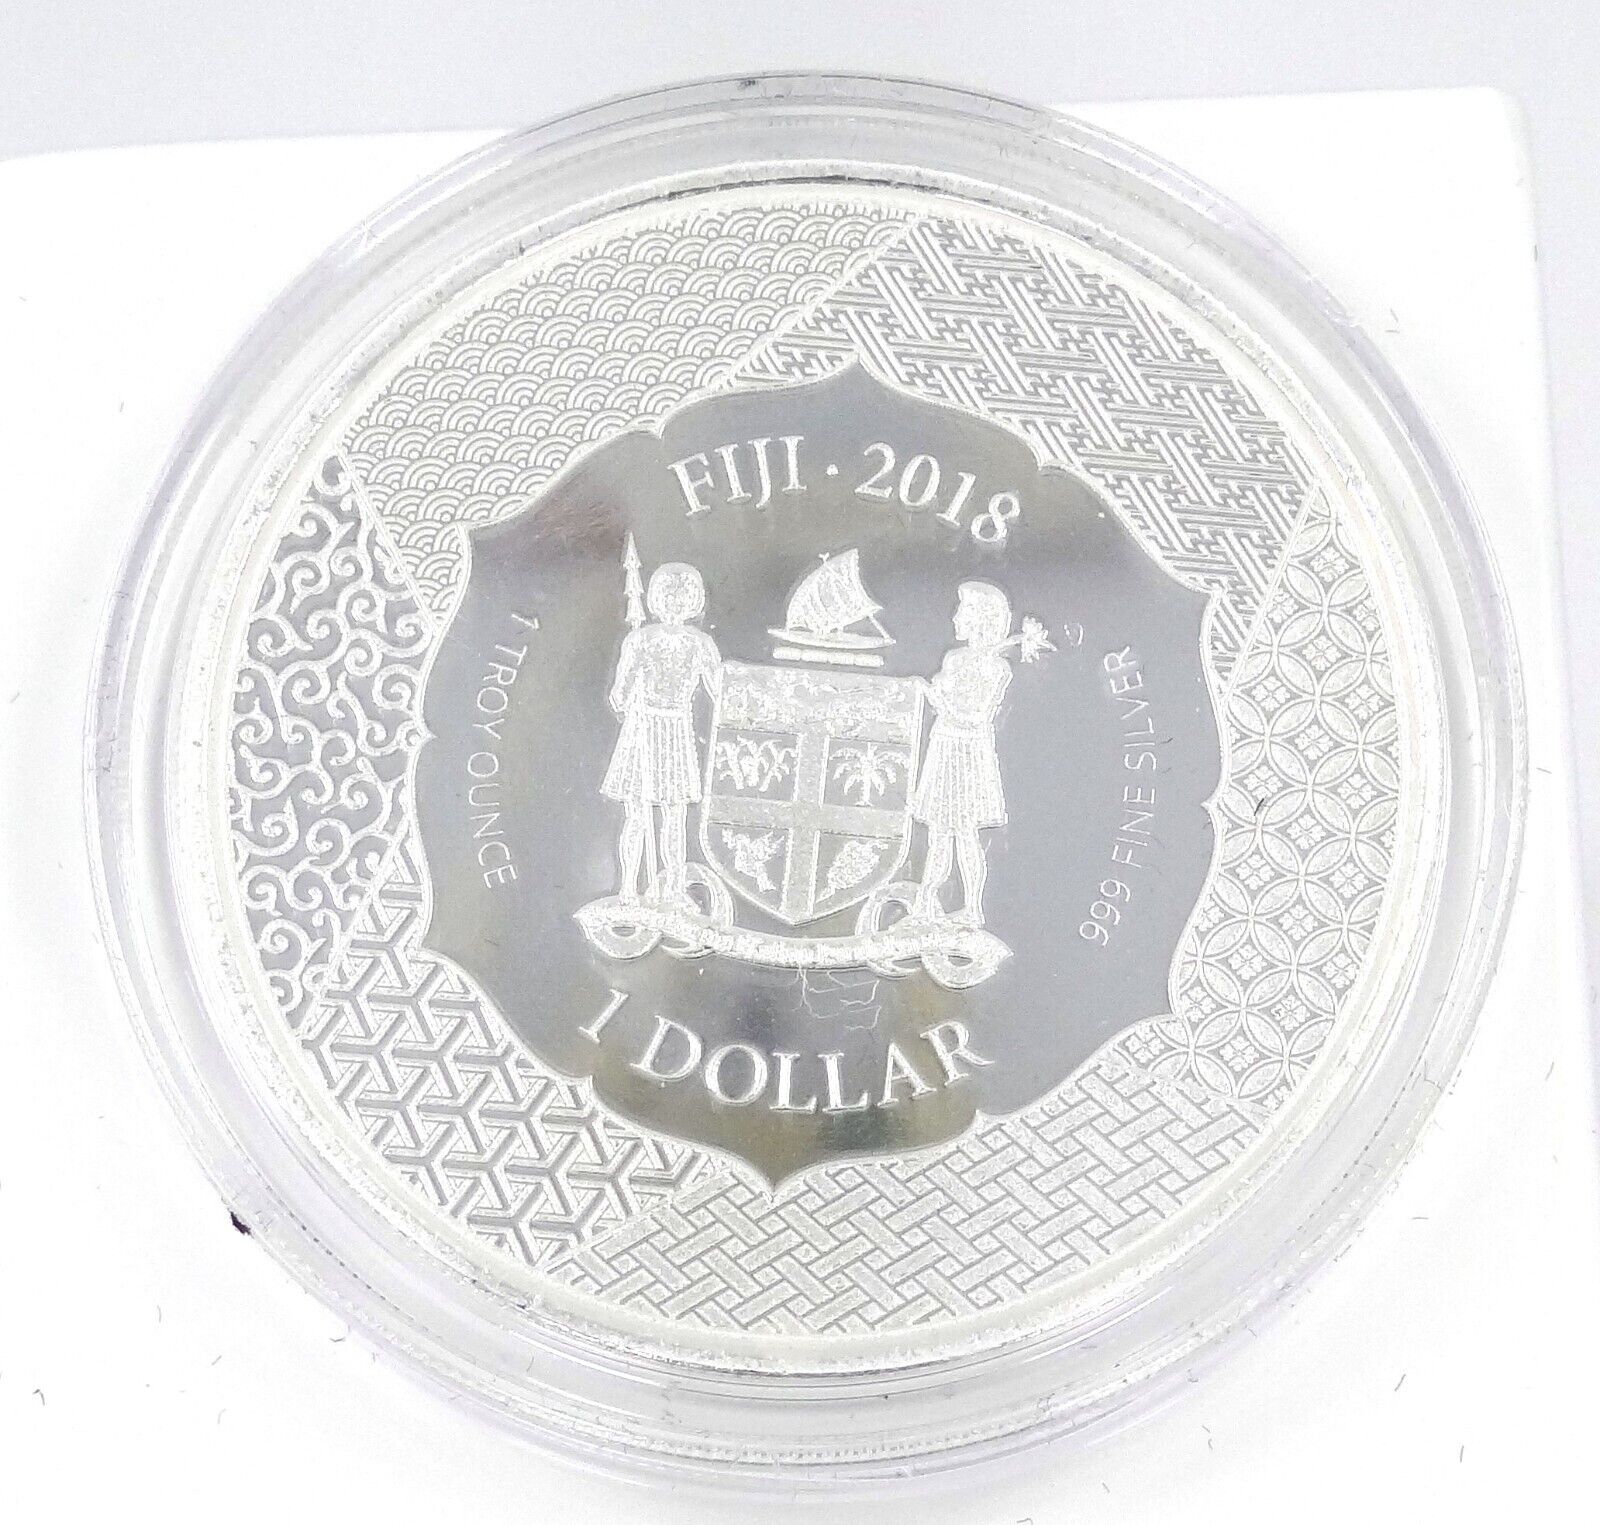 1 Oz Silver Coin 2018 $1 Fiji Scottsdale Mint Samurai Archives Colored Kiyomori-classypw.com-1